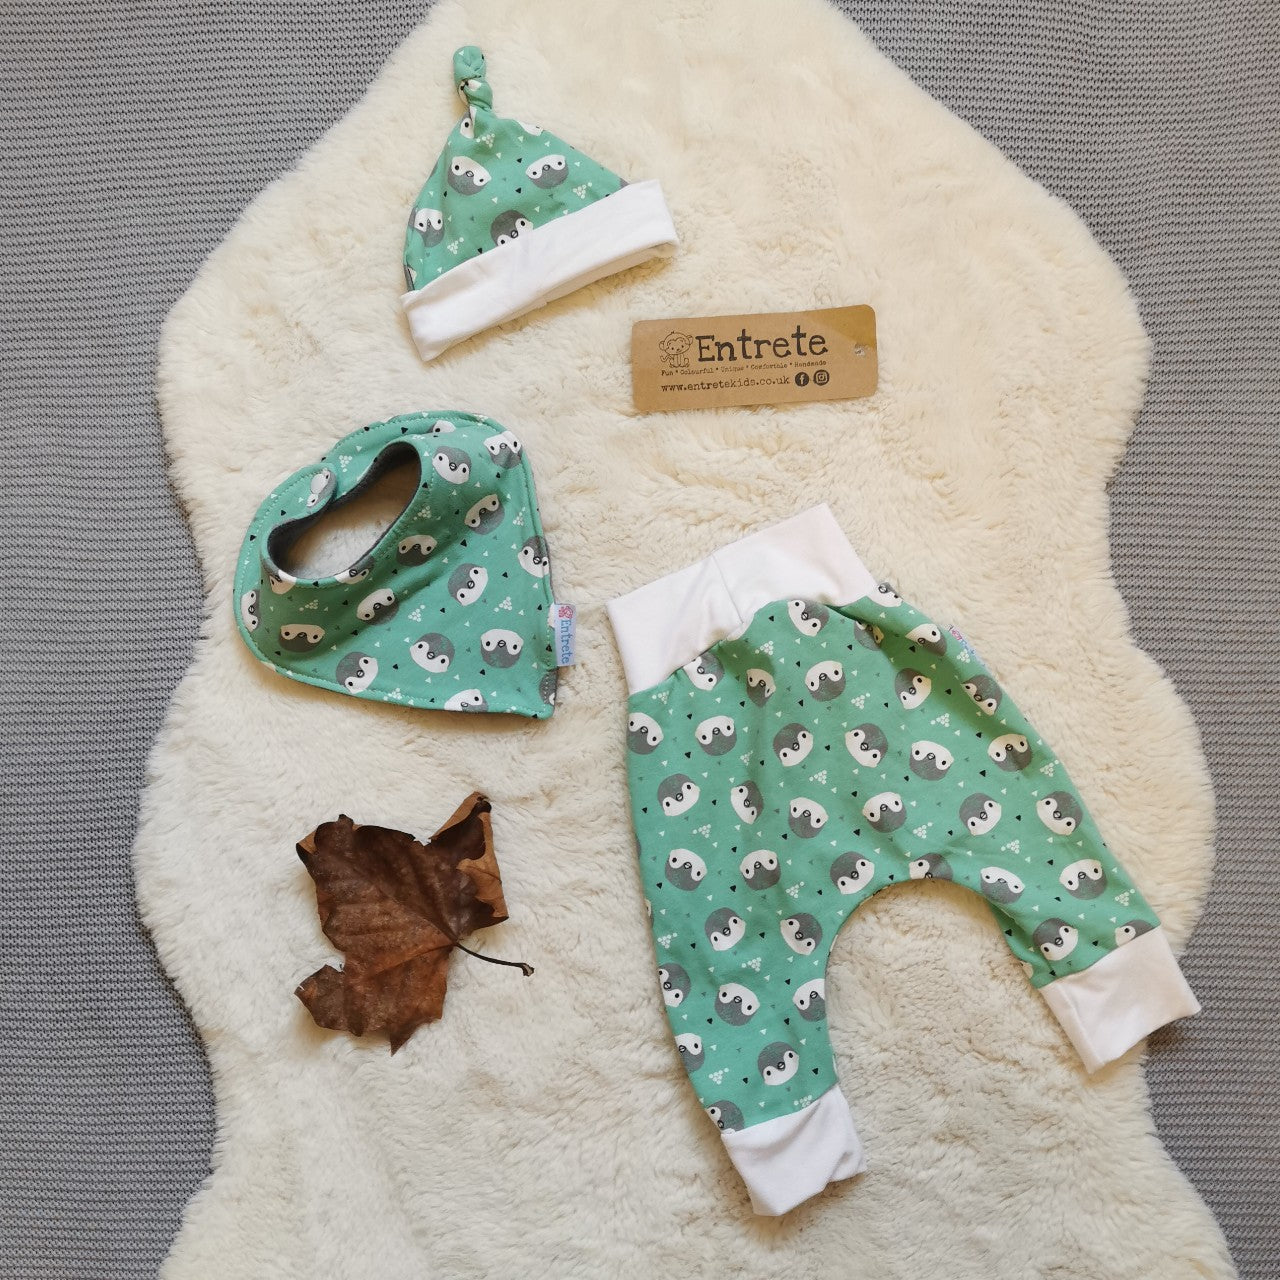 A harem gift set handmade using mint penguins organic cotton jersey.